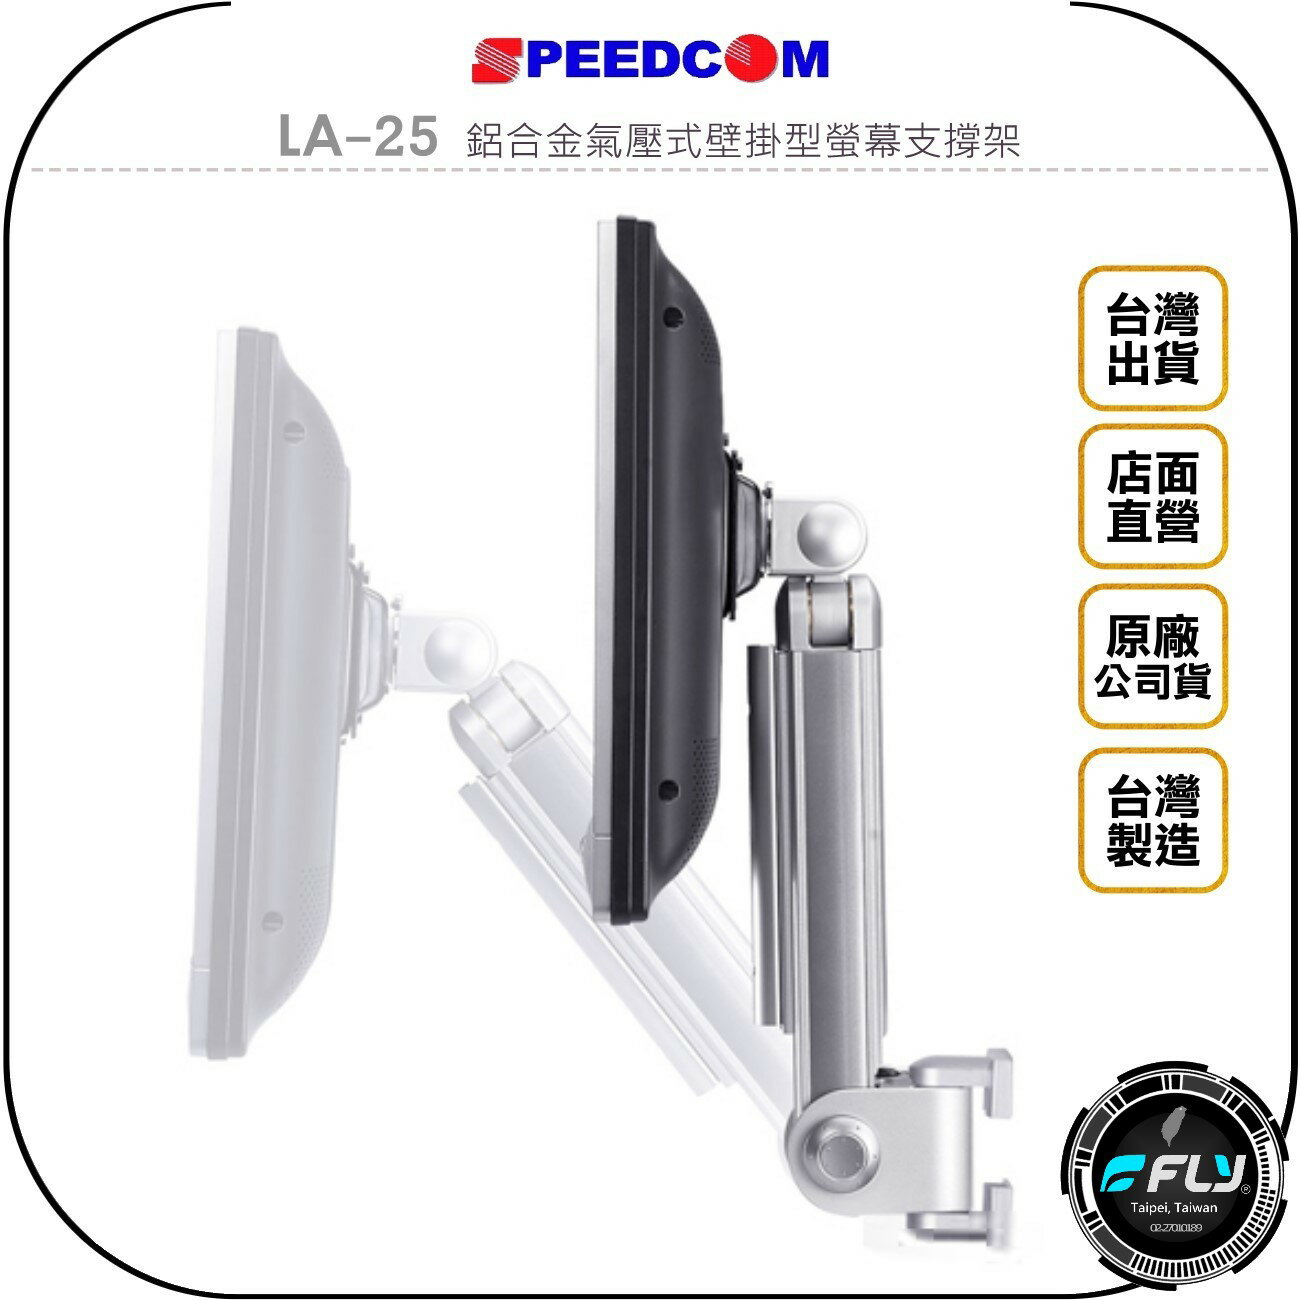 《飛翔無線3C》SPEEDCOM LA-25 鋁合金氣壓式壁掛型螢幕支撐架◉公司貨◉台灣製造◉適用15~24吋